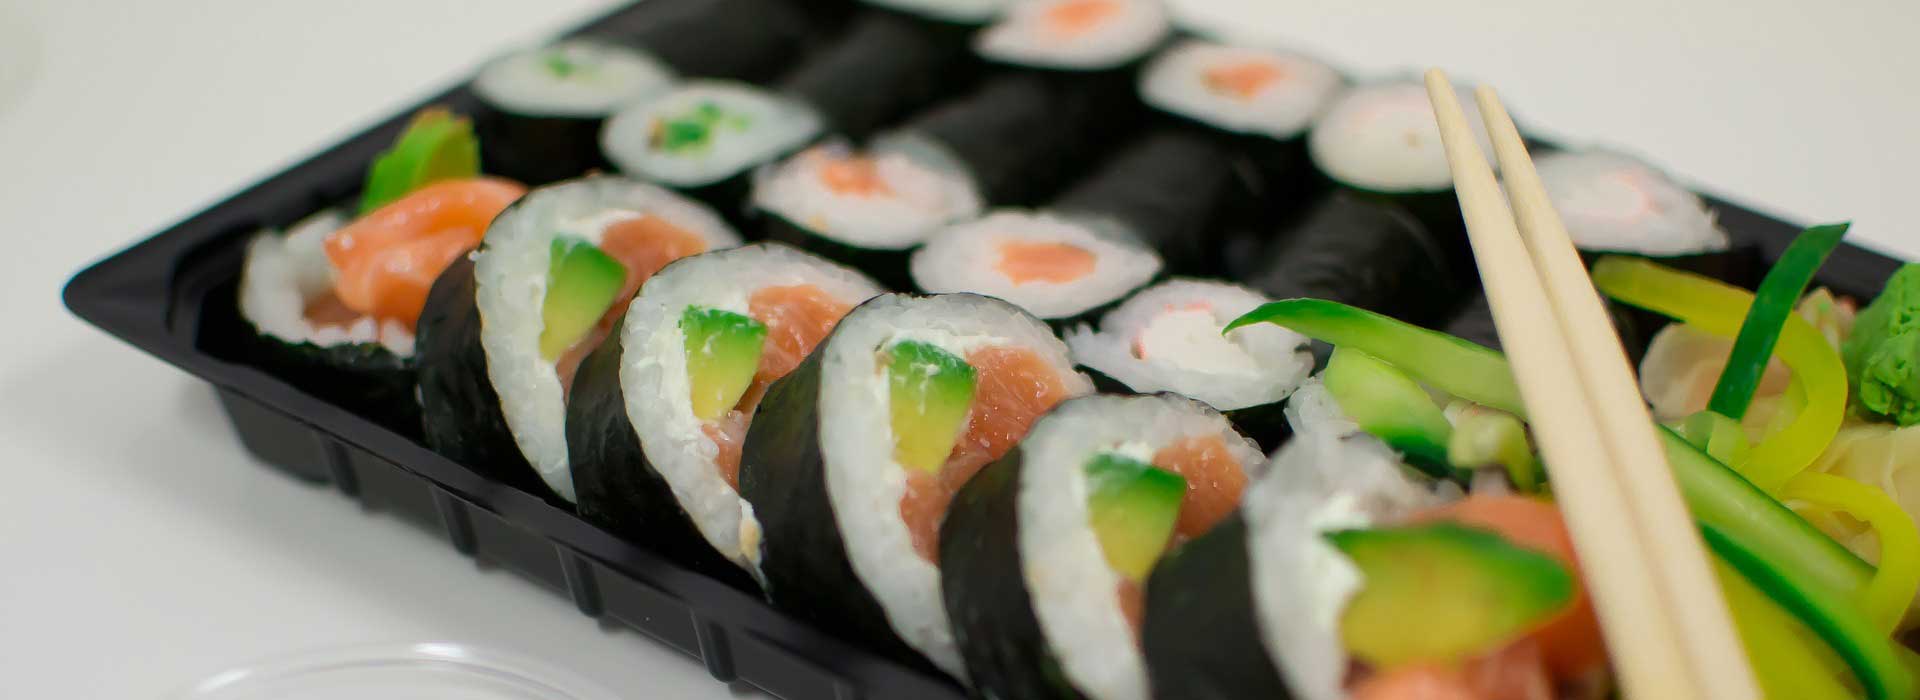 Varios sushi en una bandeja para llevar